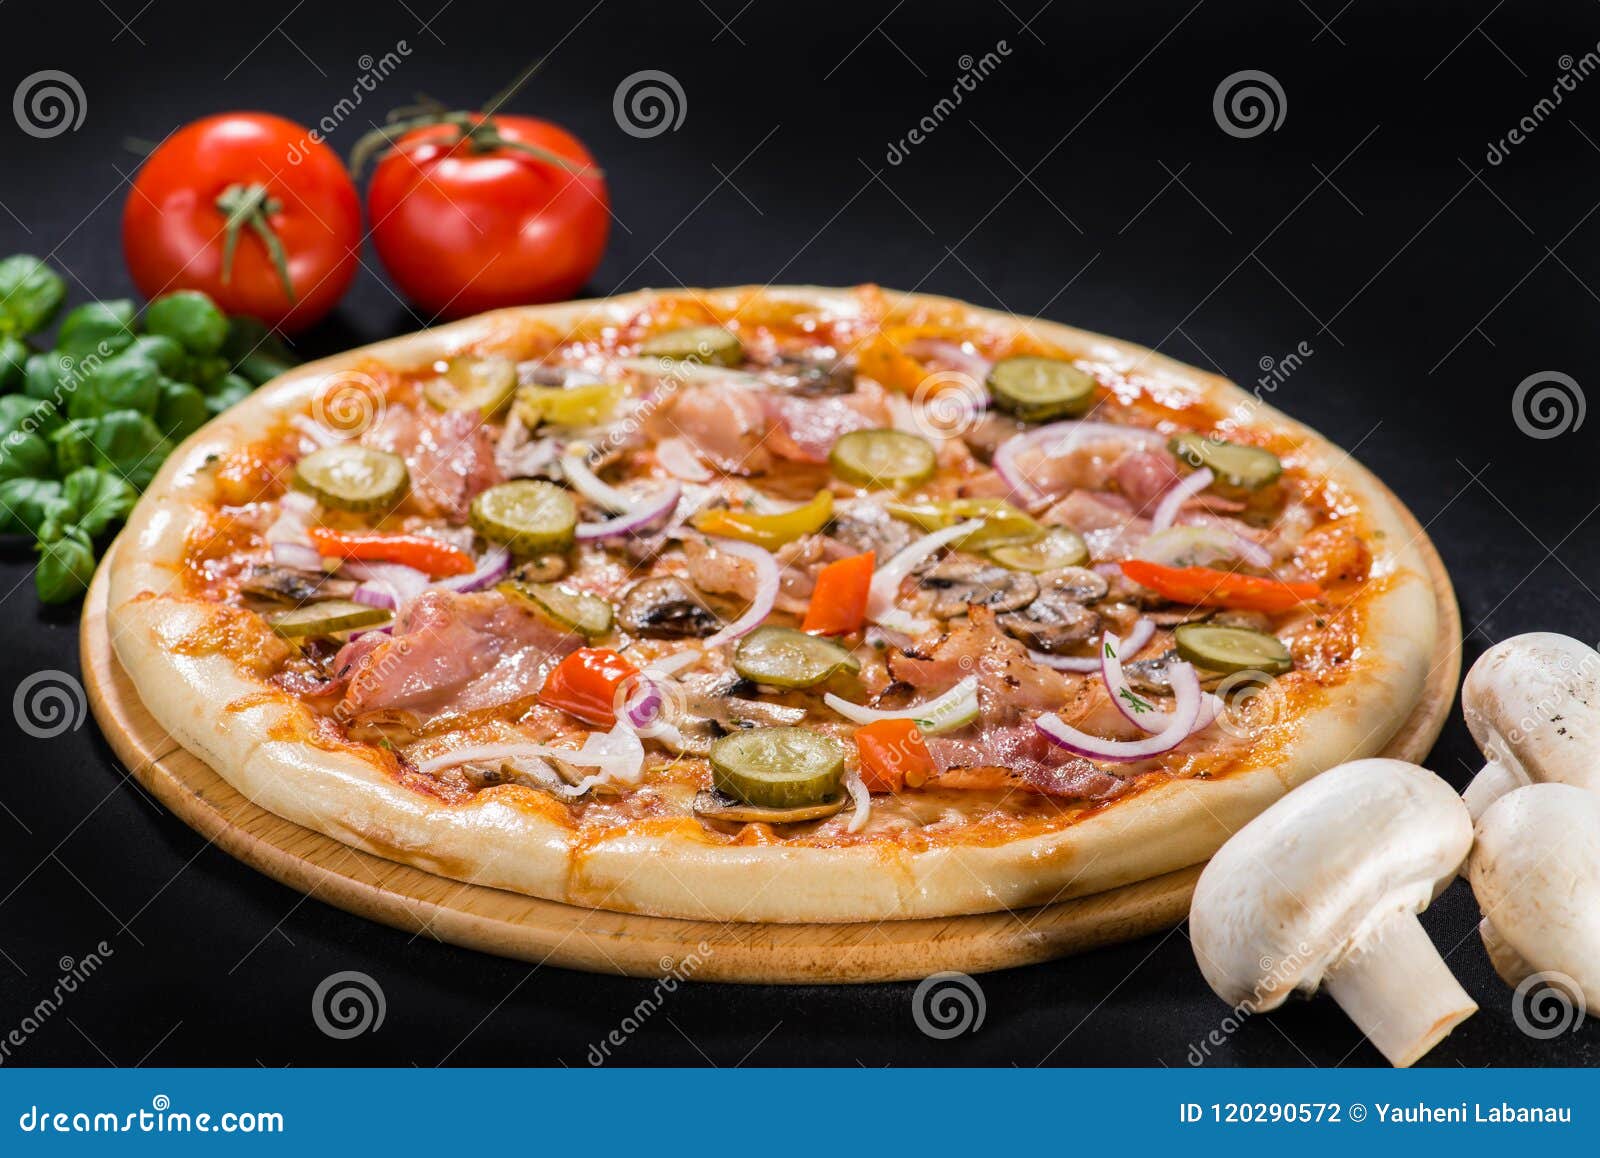 чесночное масло для пиццы как в пиццерии рецепт фото 86